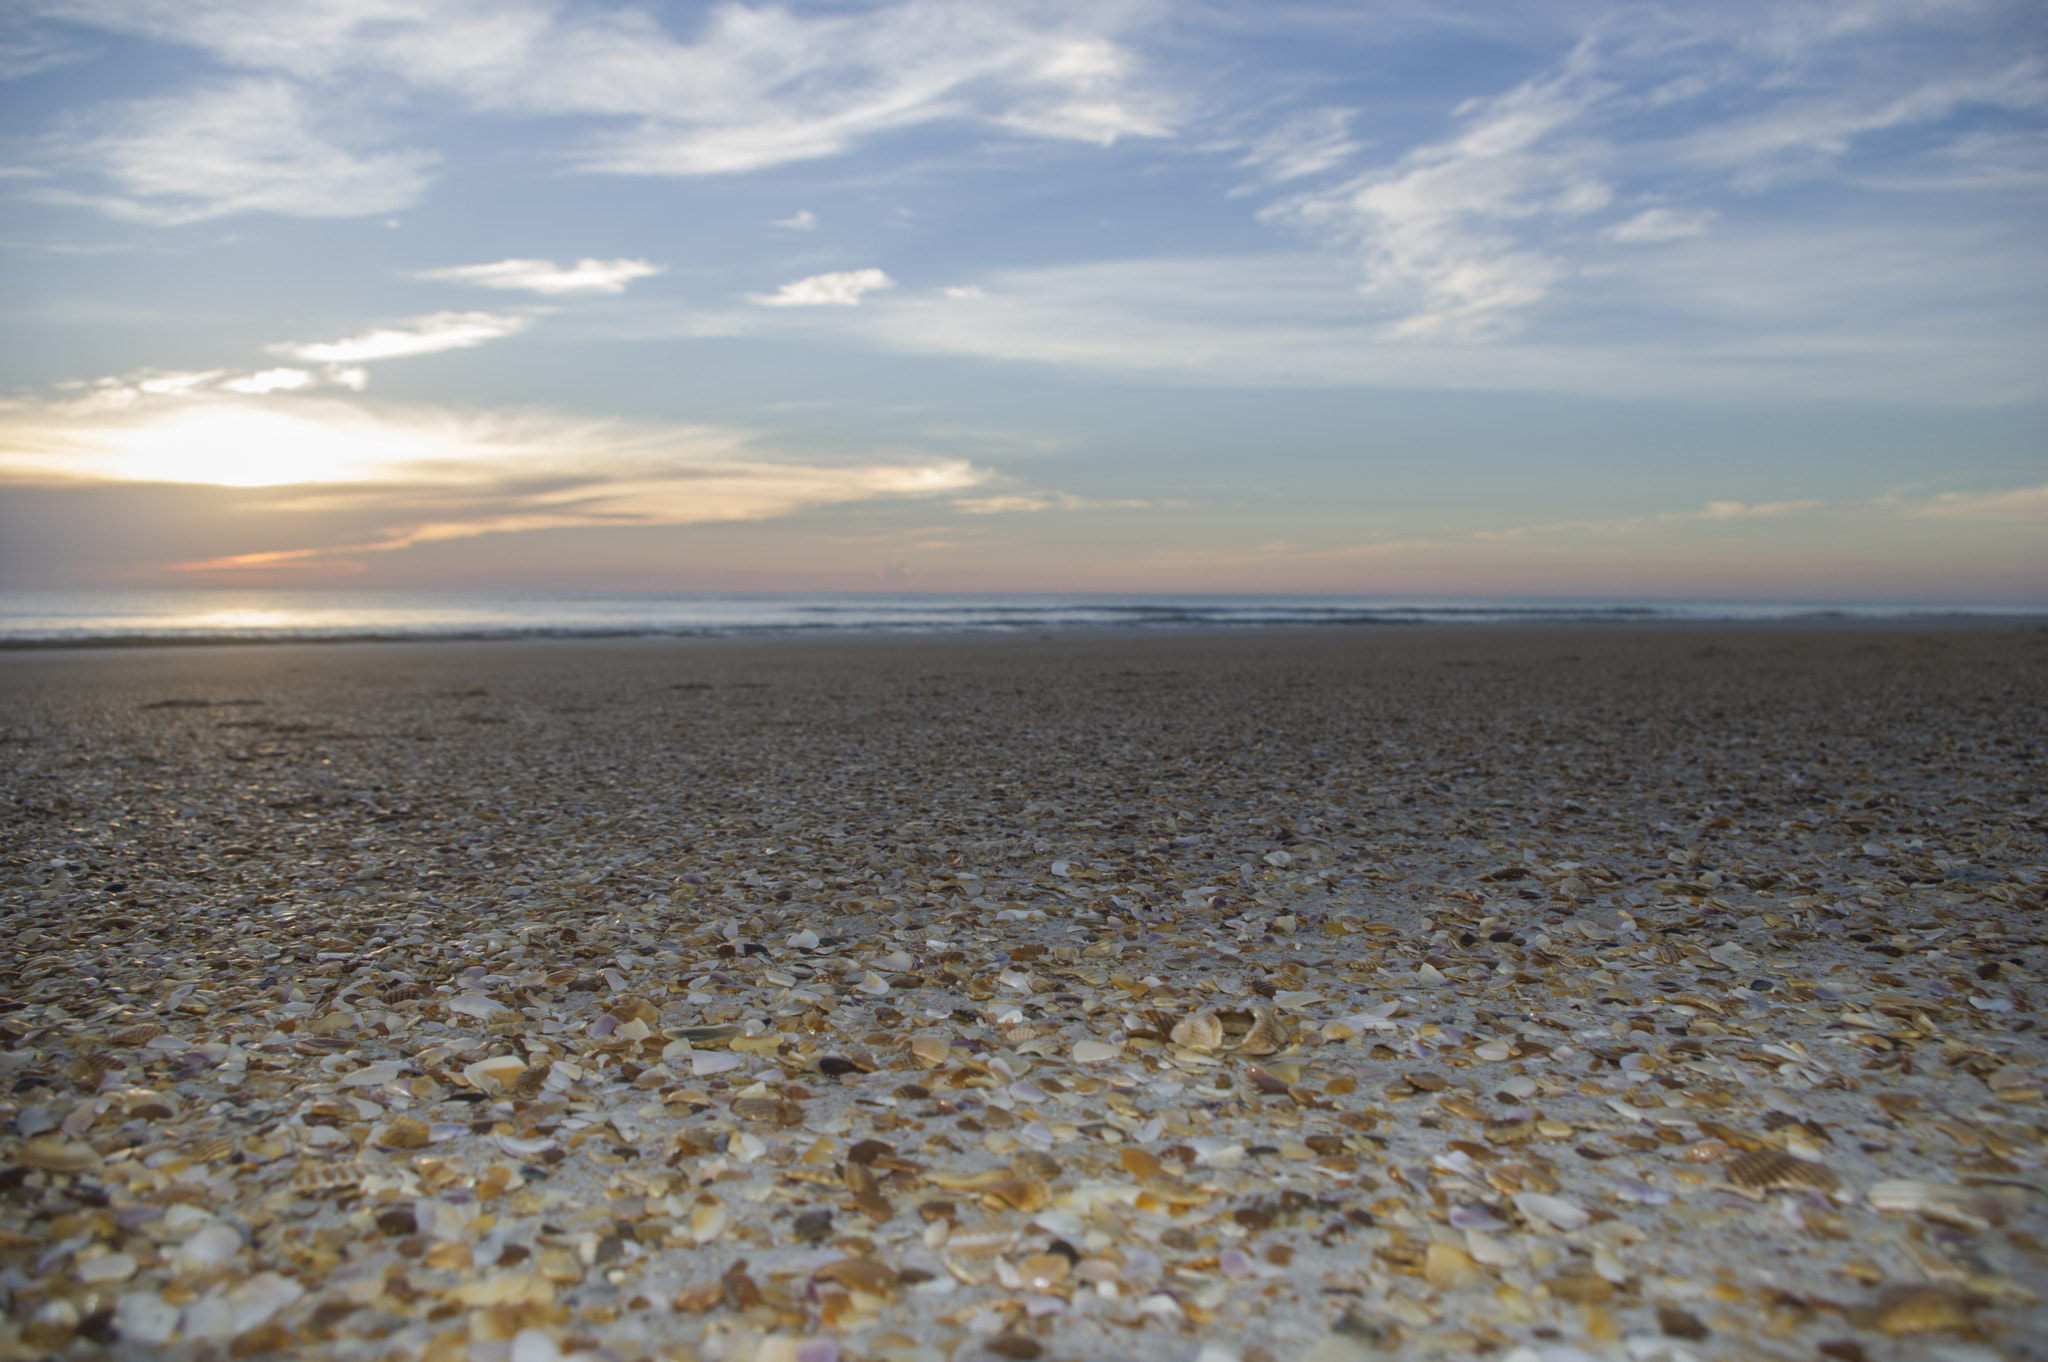 Pentax K-3 sample photo. Sea shells on the sea shore photography